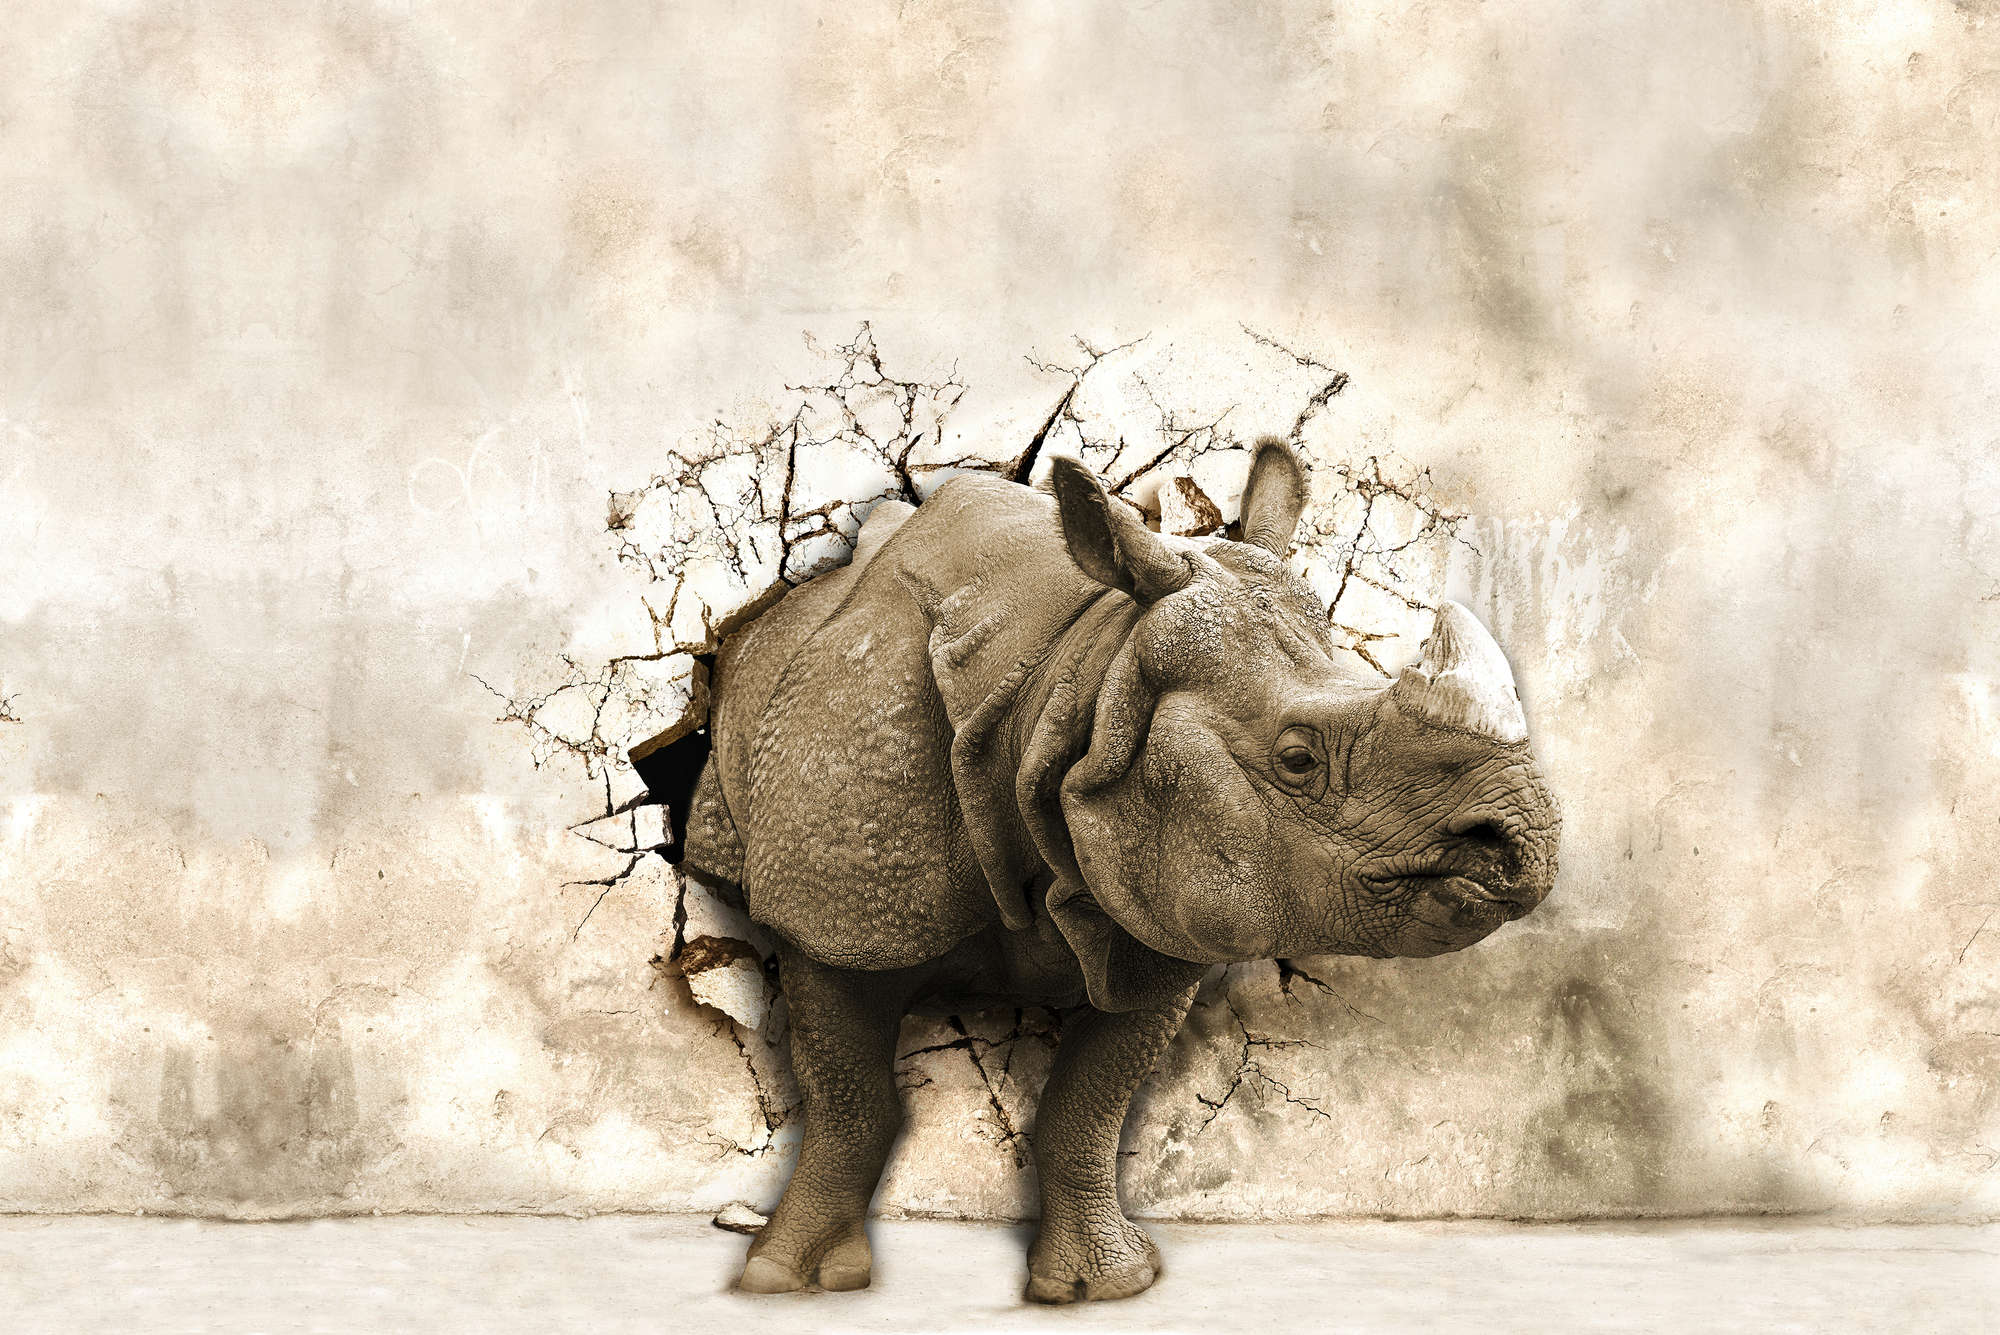             Motivo animale murale rinoceronte nella parete su vello liscio in madreperla
        